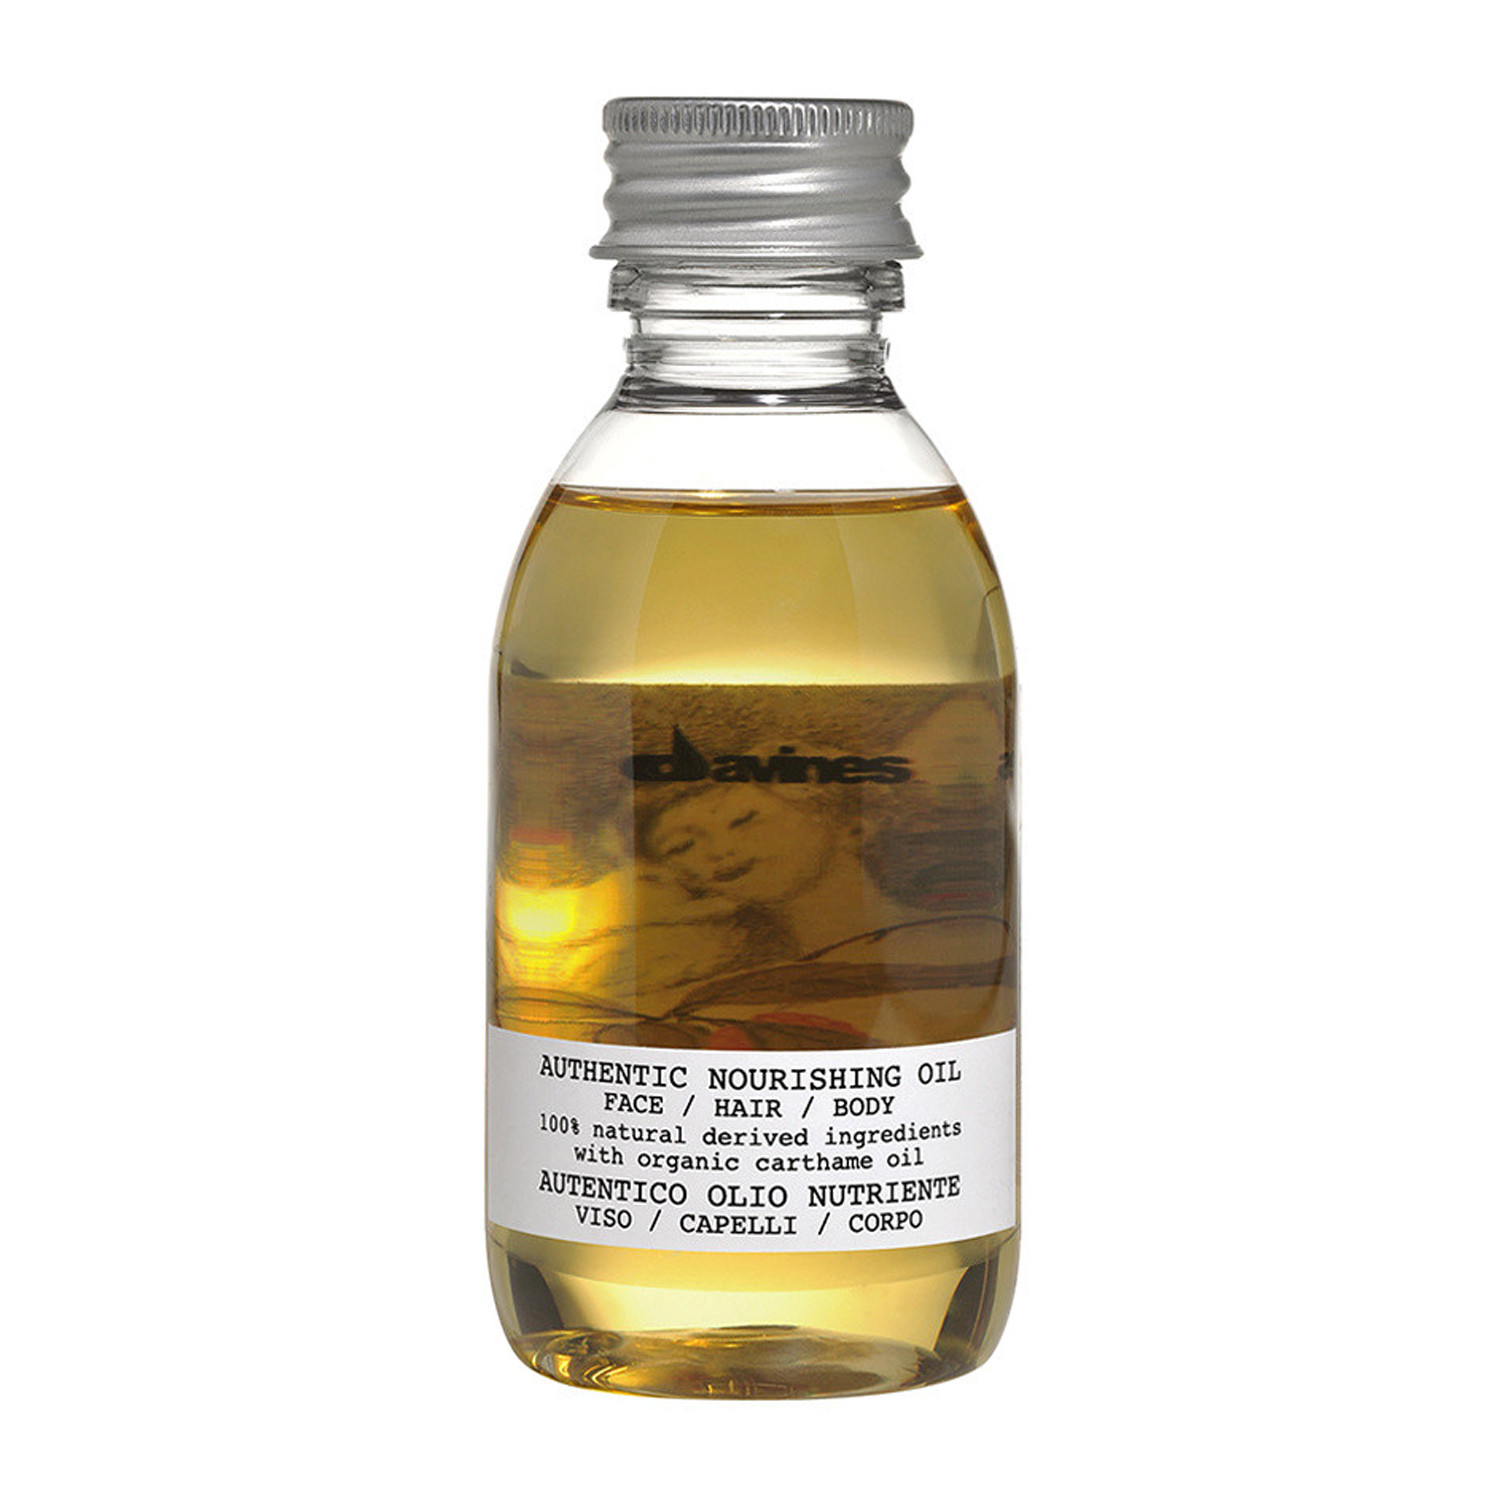 Отзывы о Davines Authentic Nourishing Oil Питательное масло для лица, волос, тела